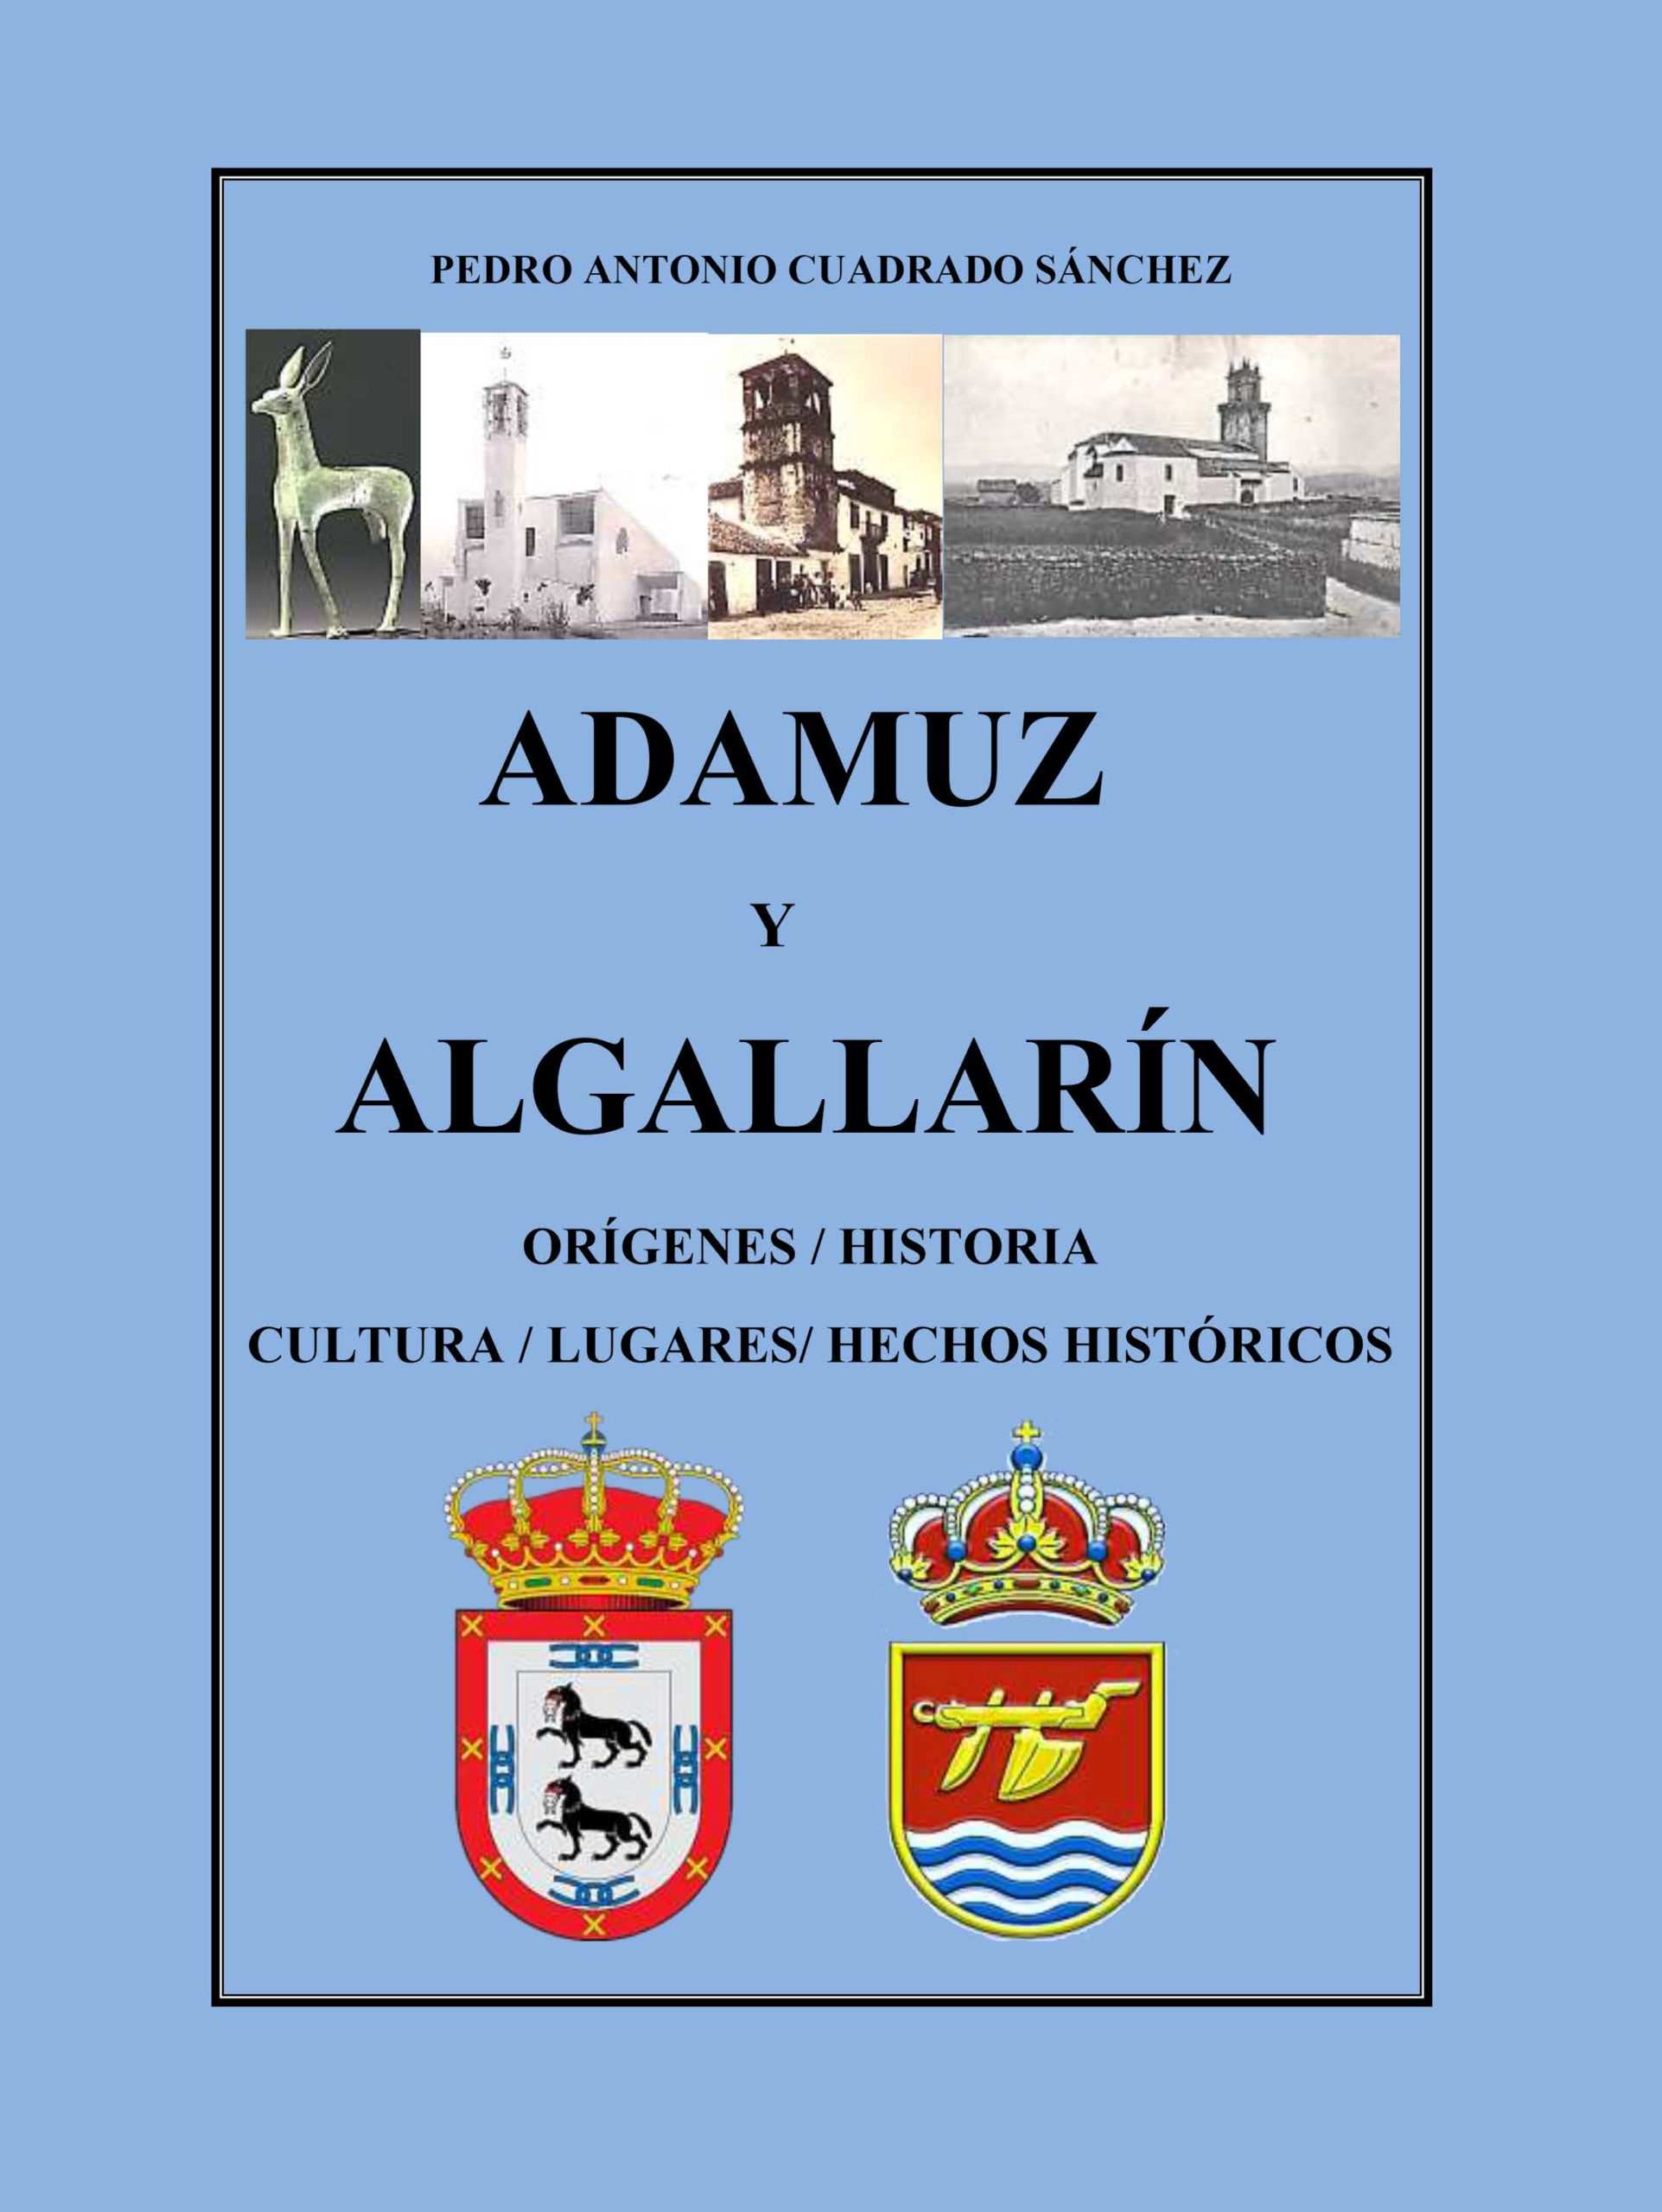 Adamuz y Algallarín.jpg